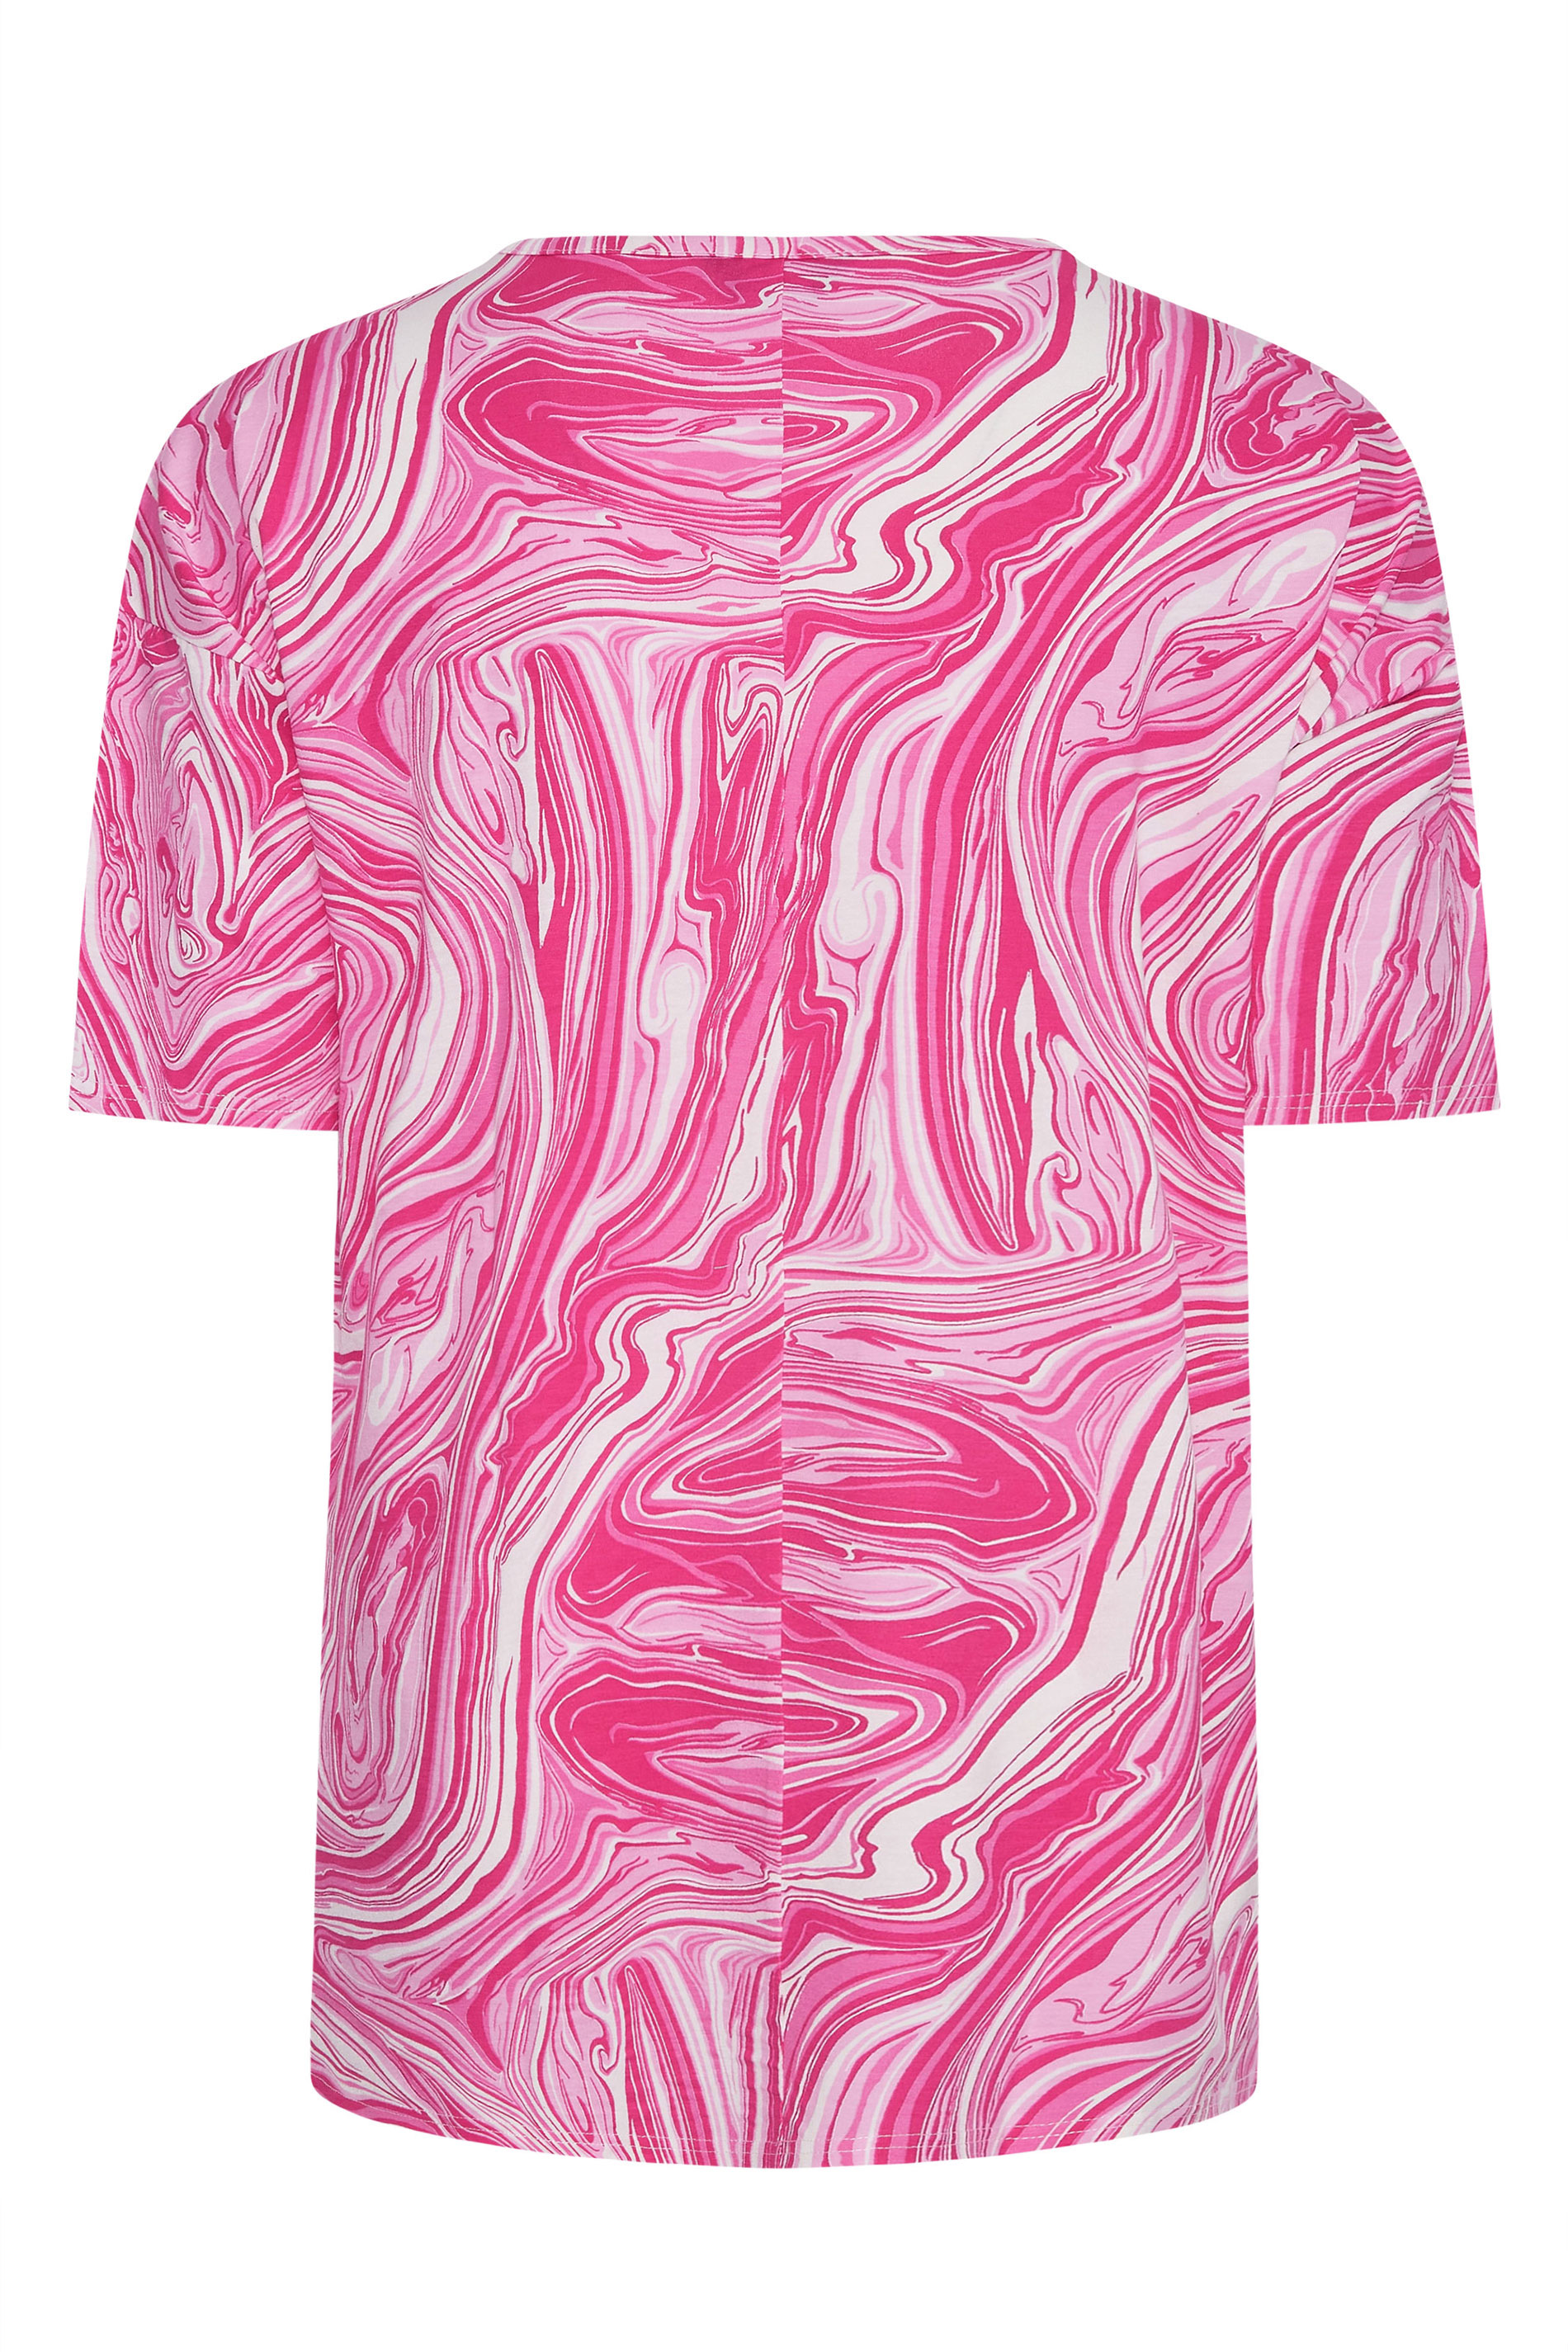 Grande taille  Tops Grande taille  T-Shirts | T-Shirt Rose Design Marbré Oversize - TT79695